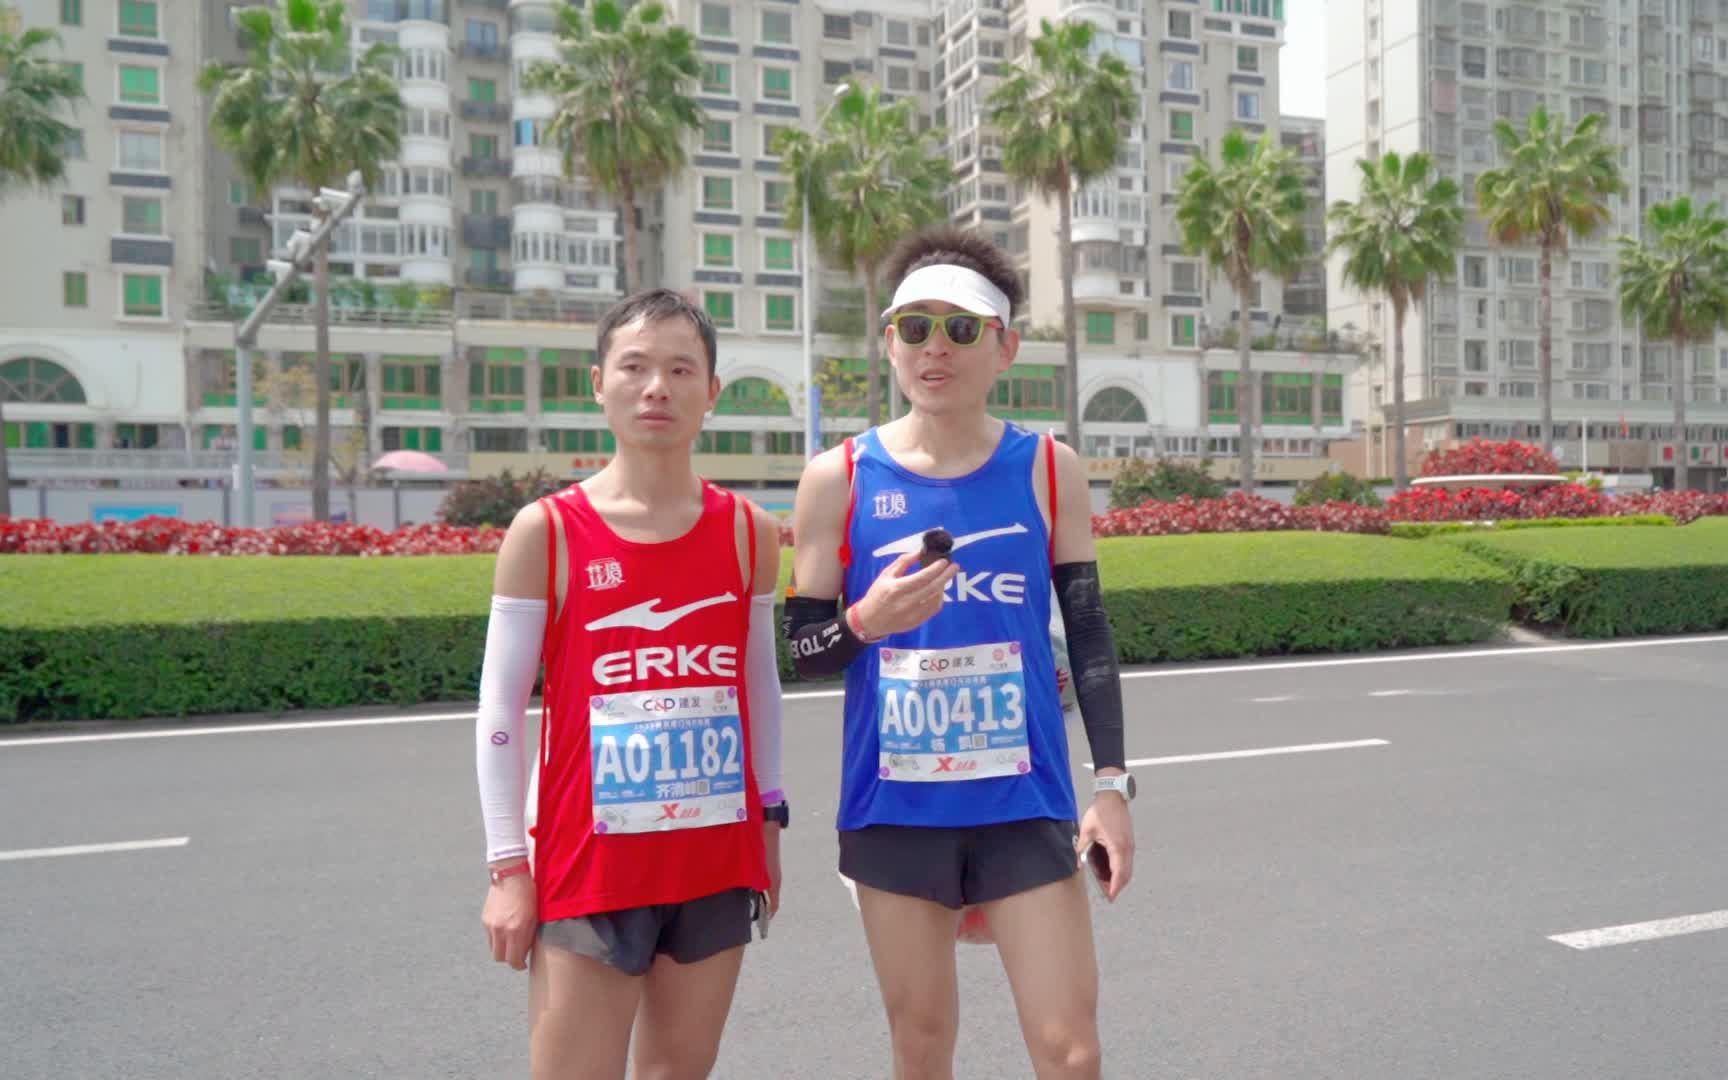 来自马拉松跑者们的真实反馈，芷境1.0助力中国跑者征服赛道！